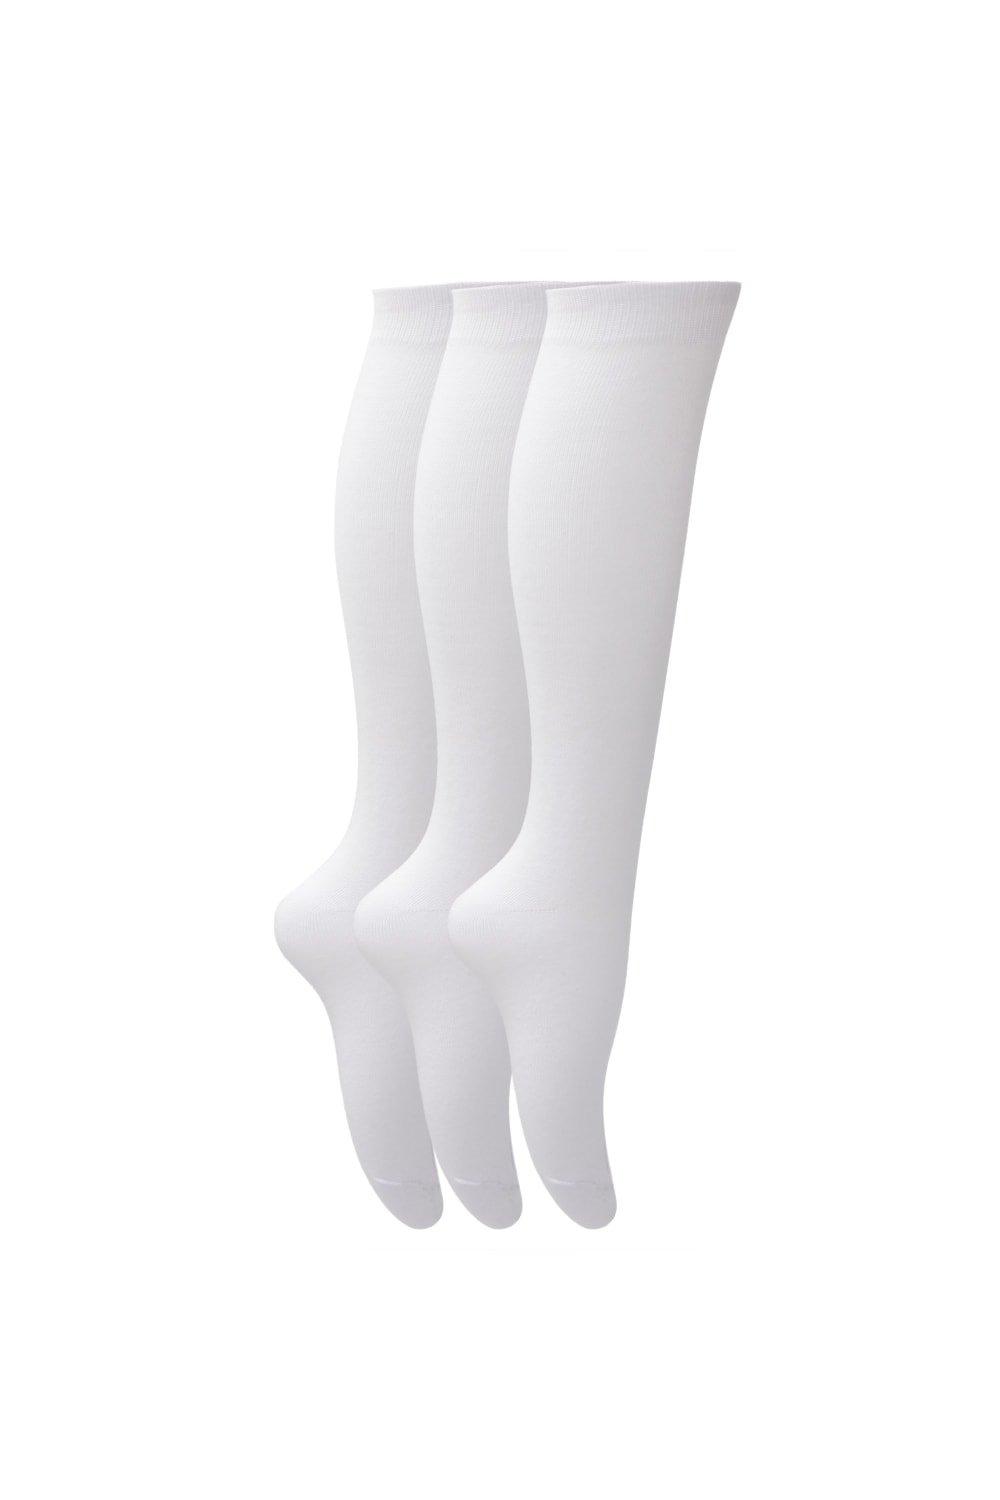 Plain Knee High School Socks (Pack Of 3)